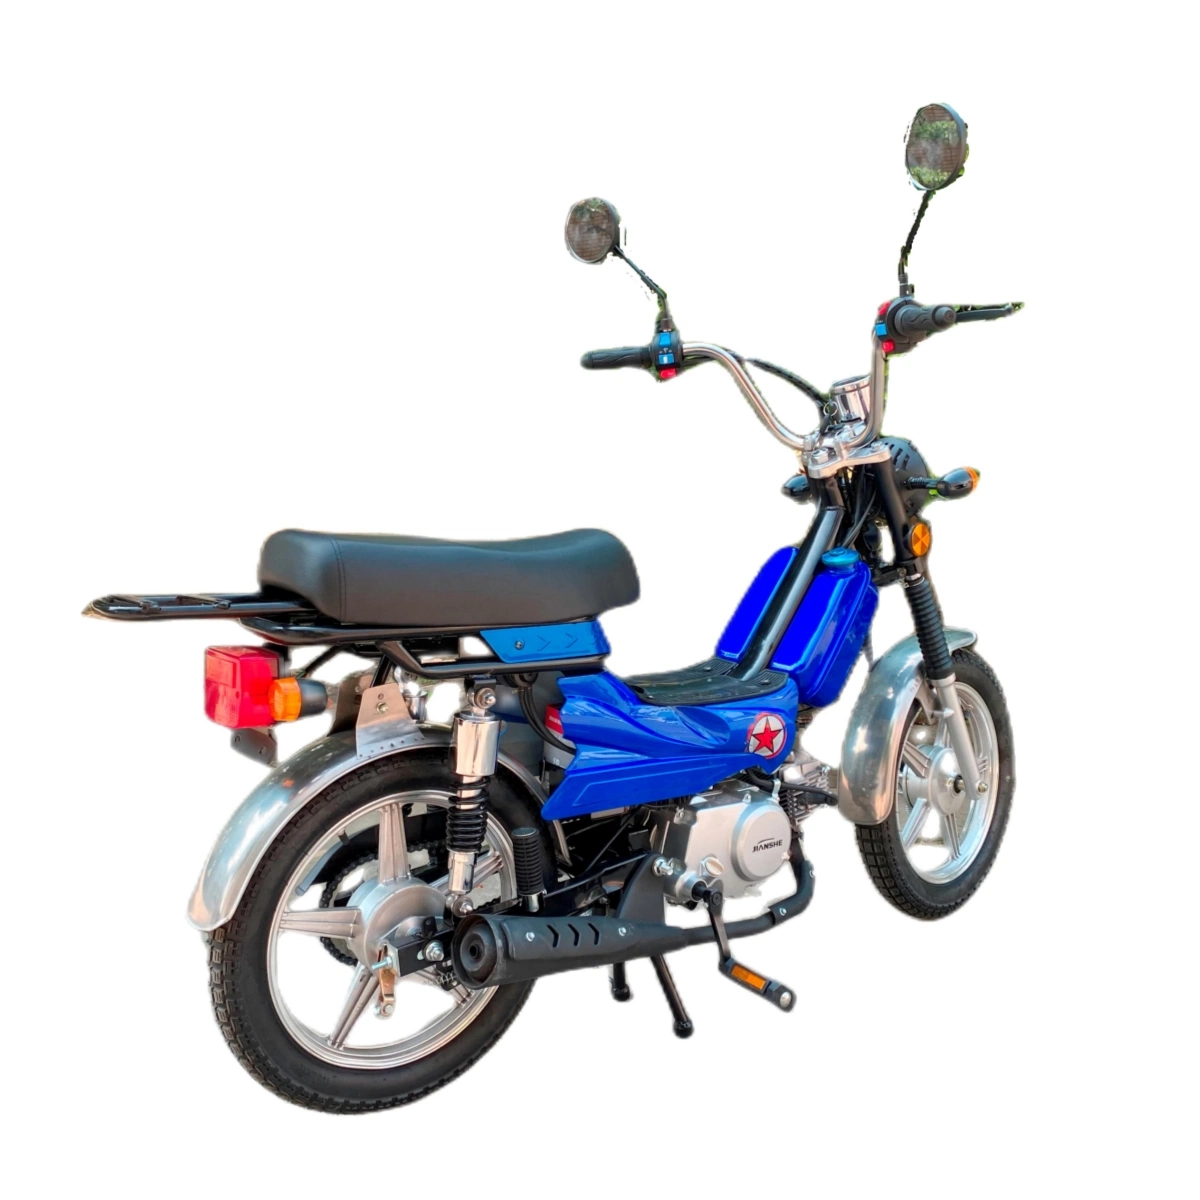 China Fabricante Desconto de venda quente Classic CEE 50cc a gasolina moto, Mini-moto, Childred pequeno ciclomotor, Cub moto, Rua de gás de bicicleta de Scooter